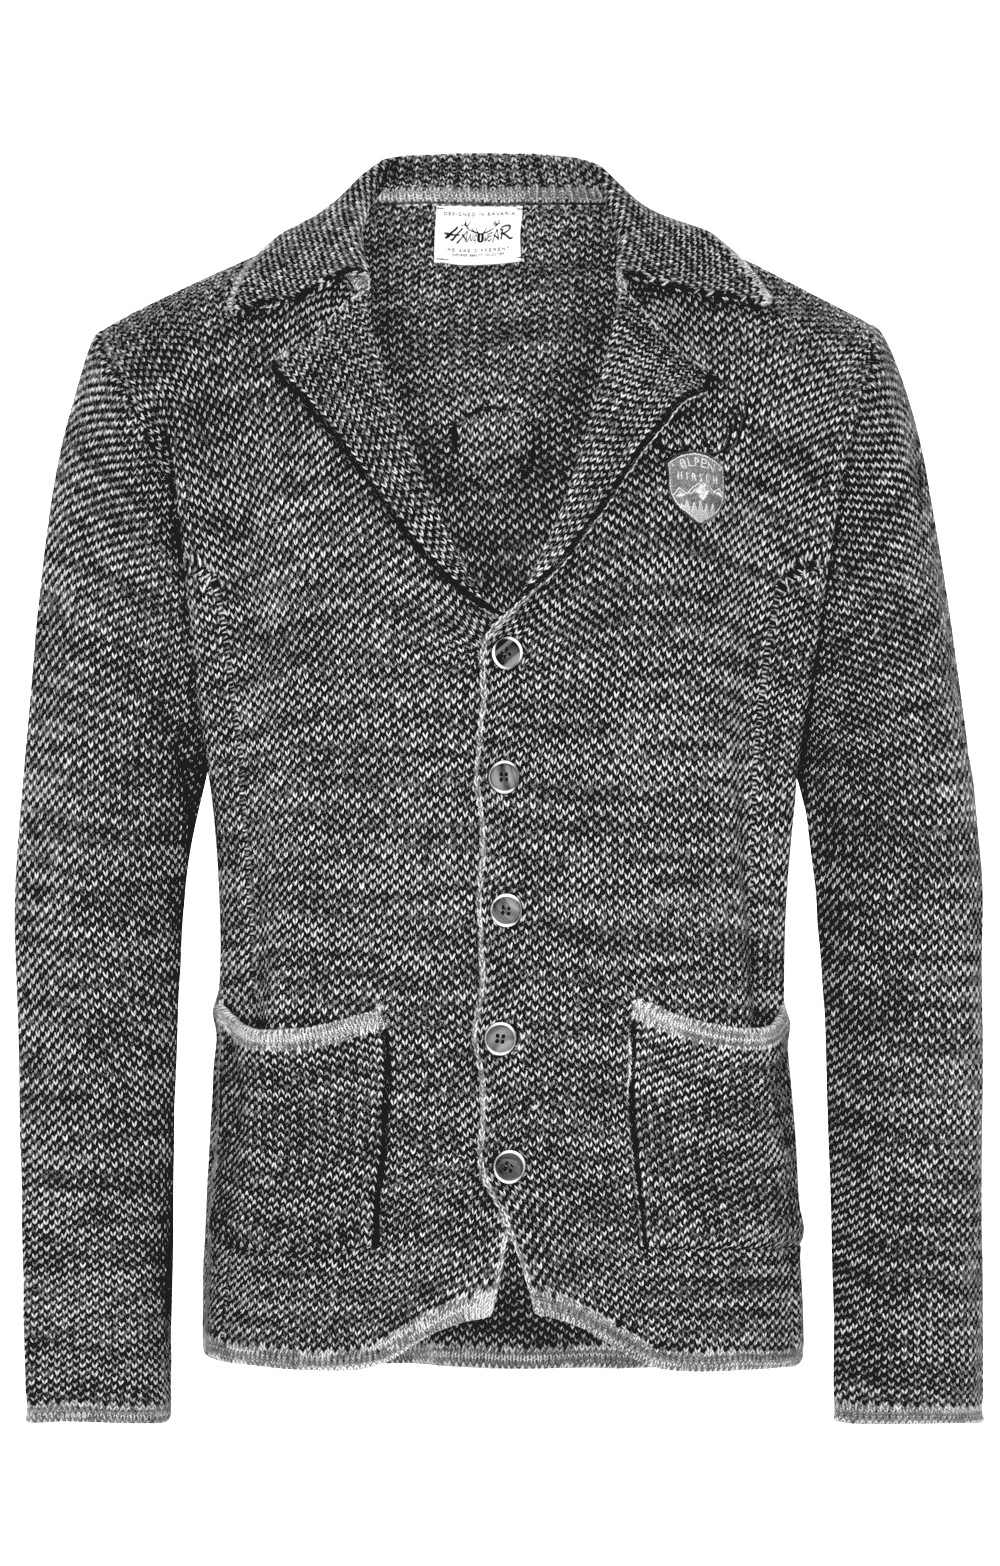 weitere Bilder von Tradizionale giacca a maglia OLAF grigio